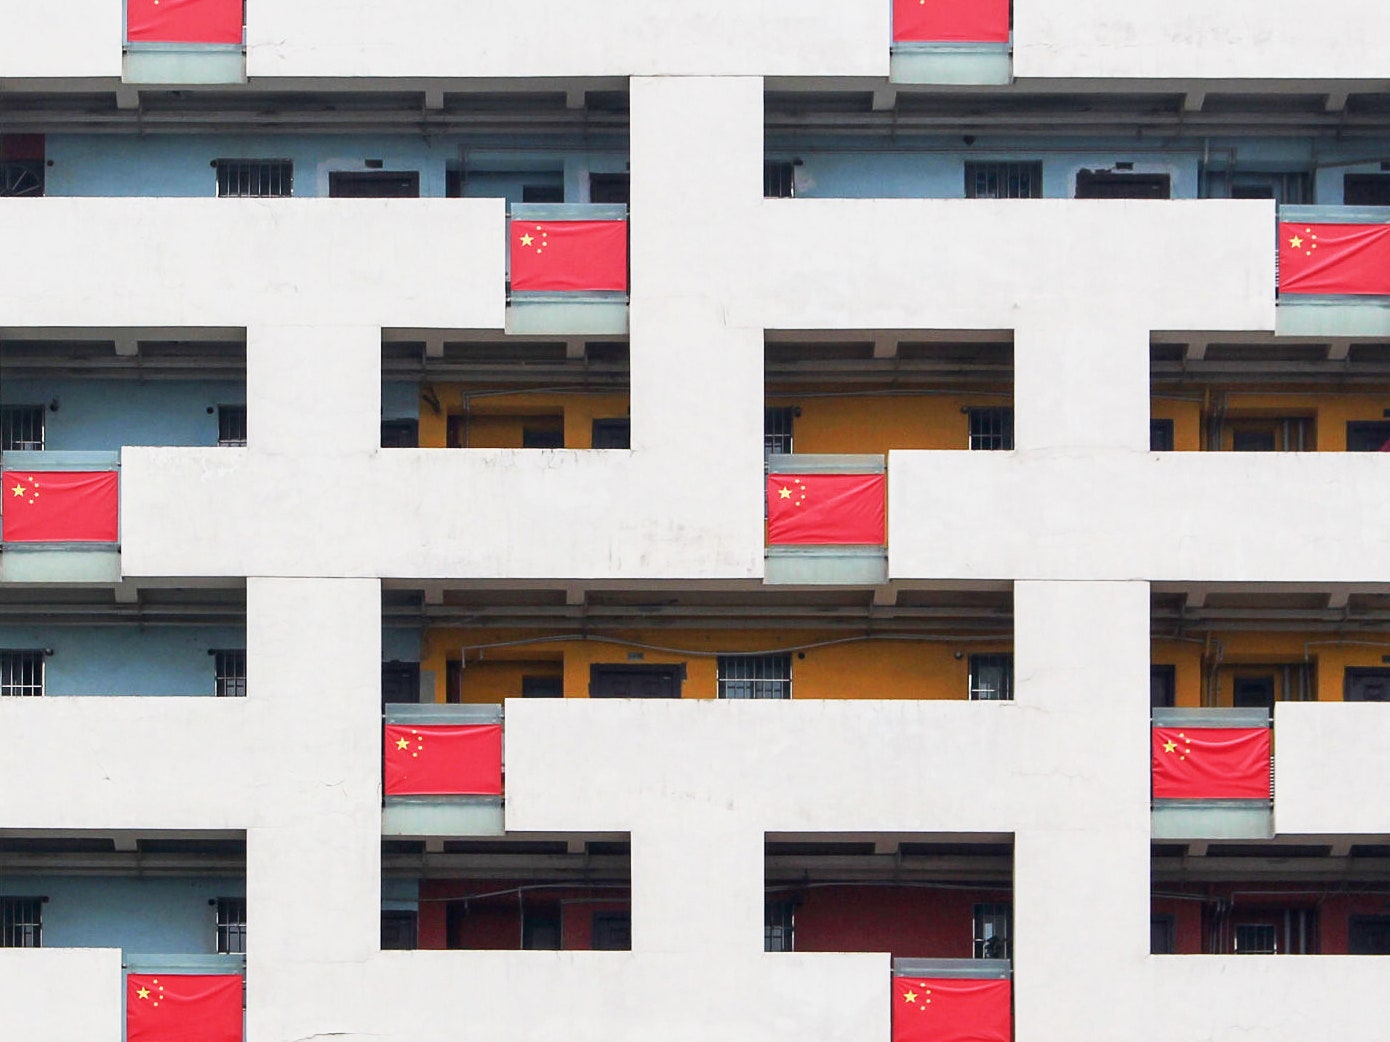 A aparência do edifício com bandeiras chinesas